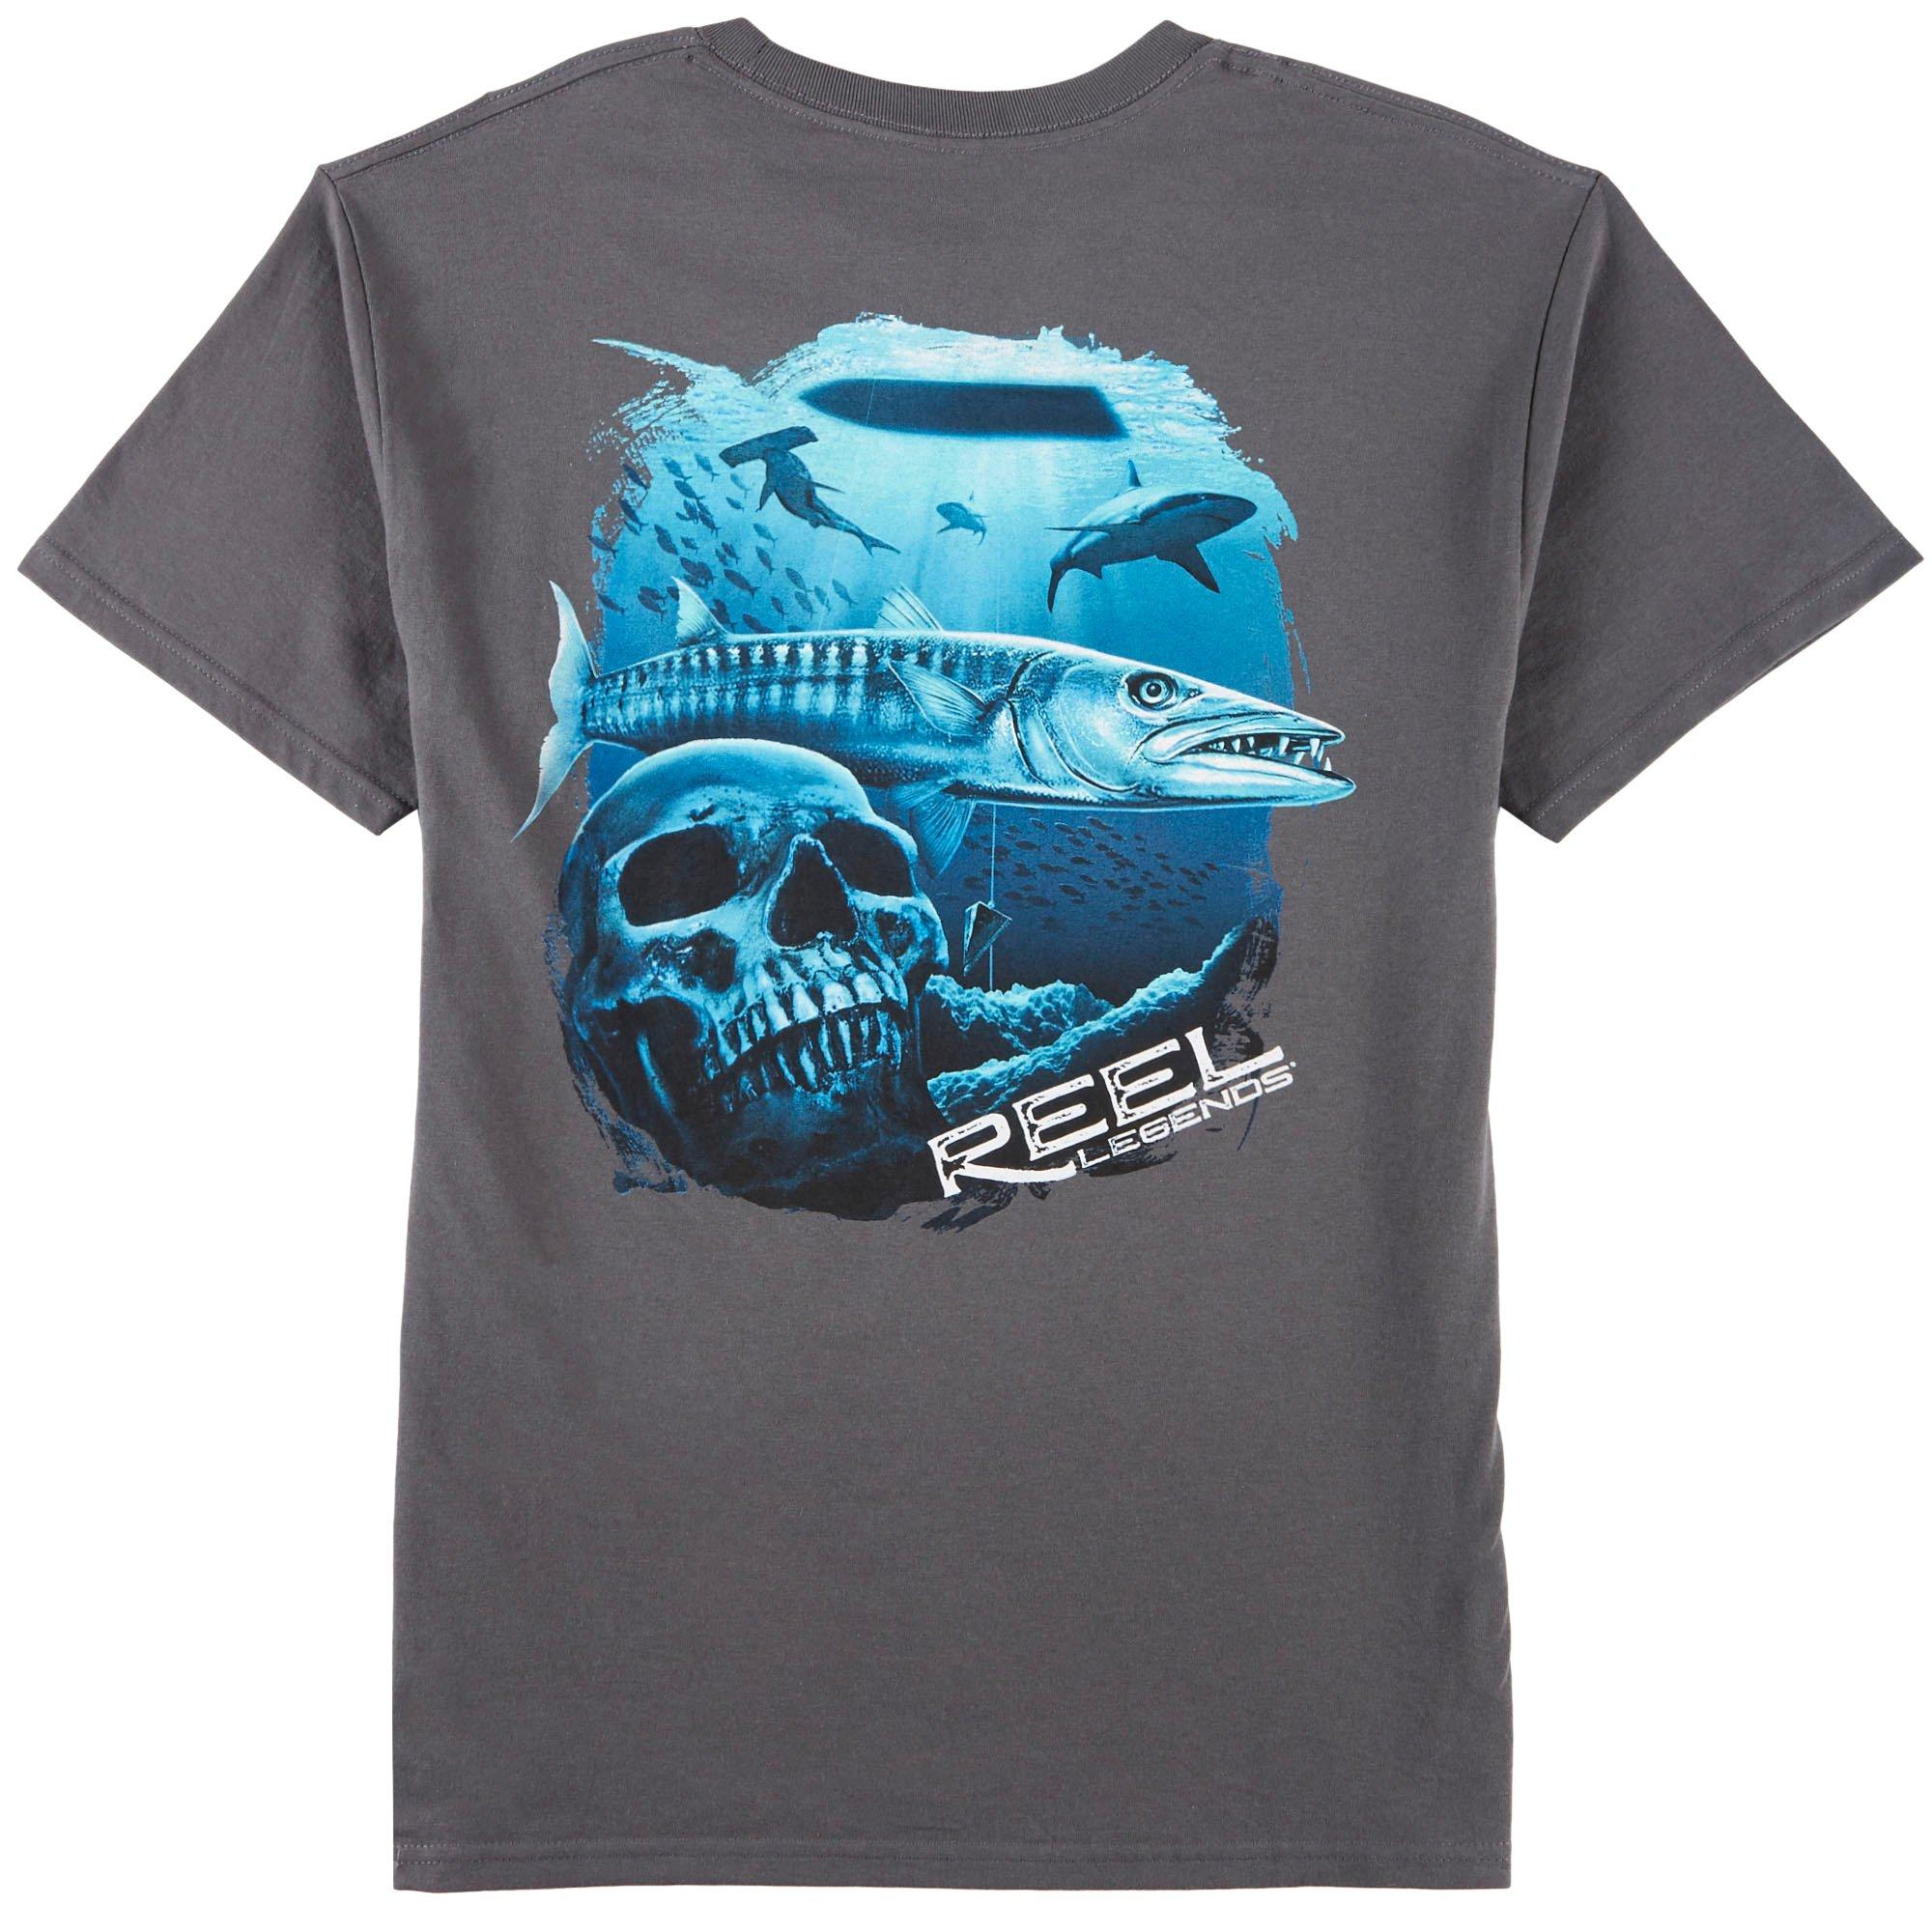 Reel Legends Mens Cuda Skull T-Shirt